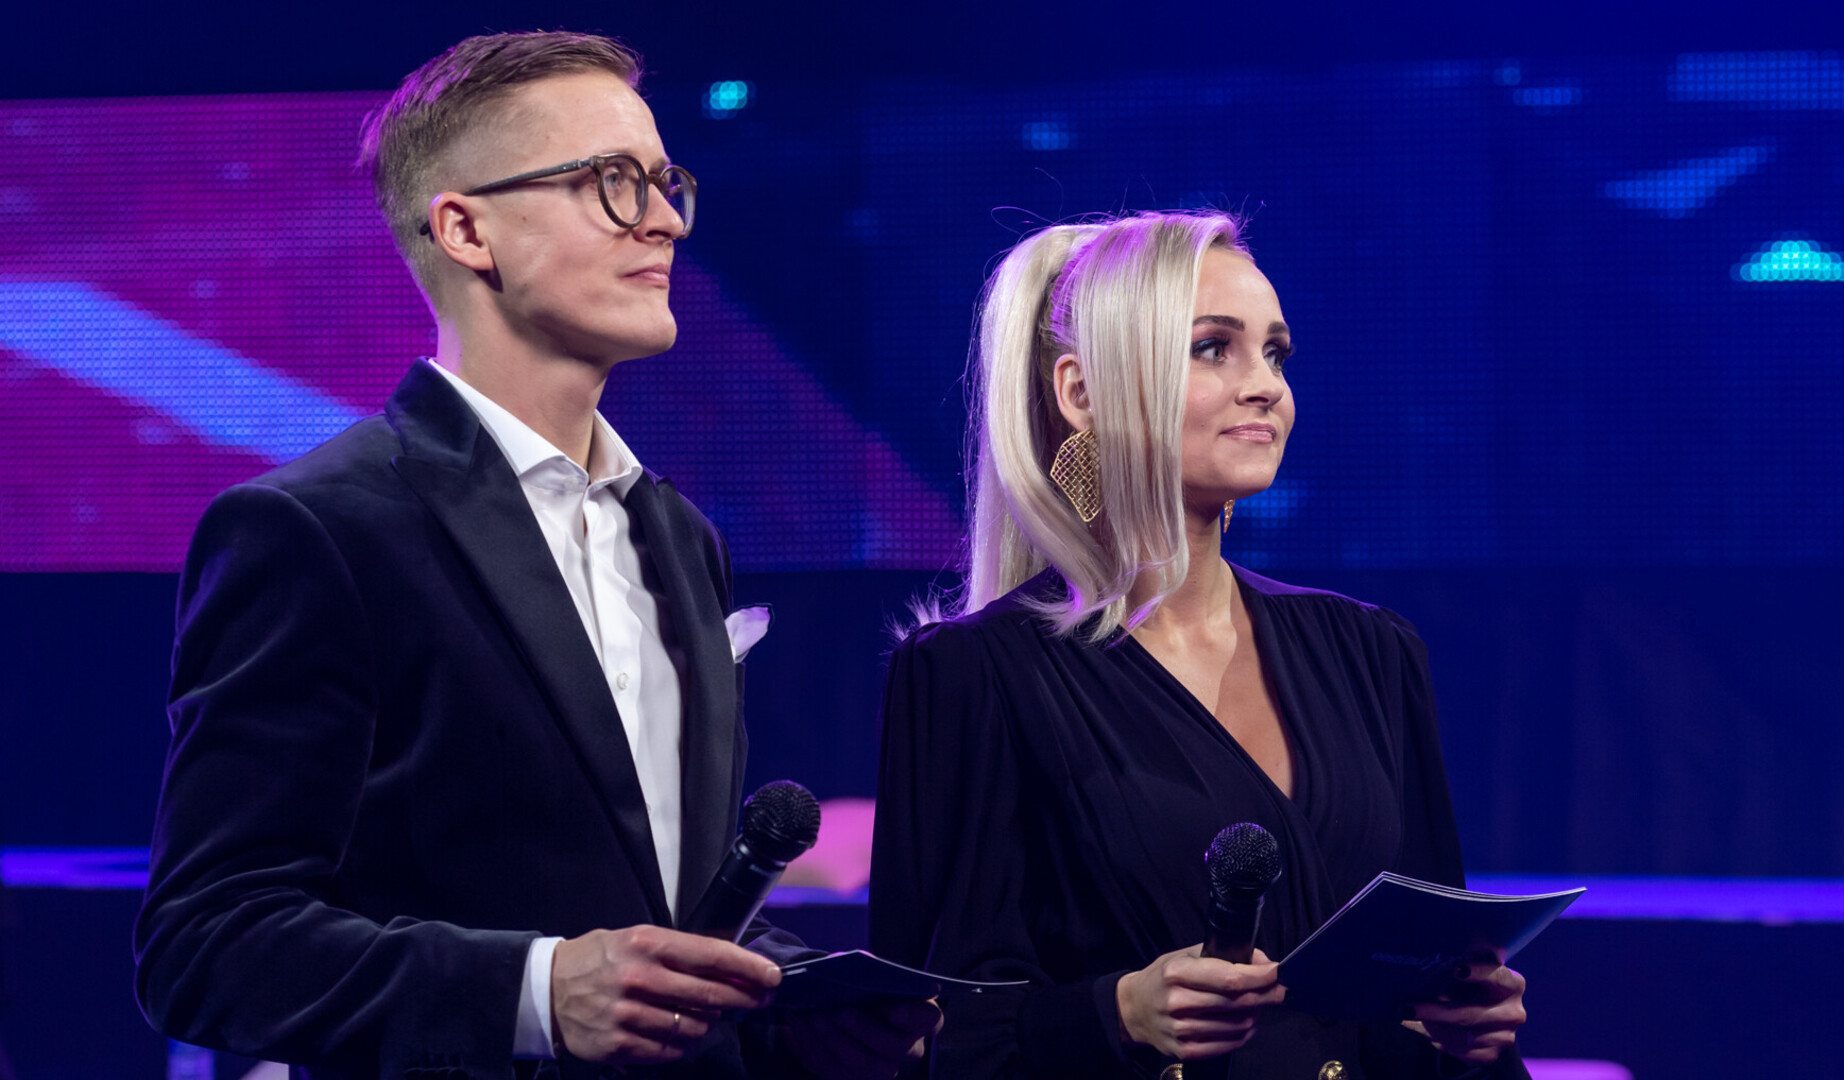 Audiencias Sociales: La segunda semifinal del Eesti Laul 2021 tuvo un impacto de 1,15M usuarios